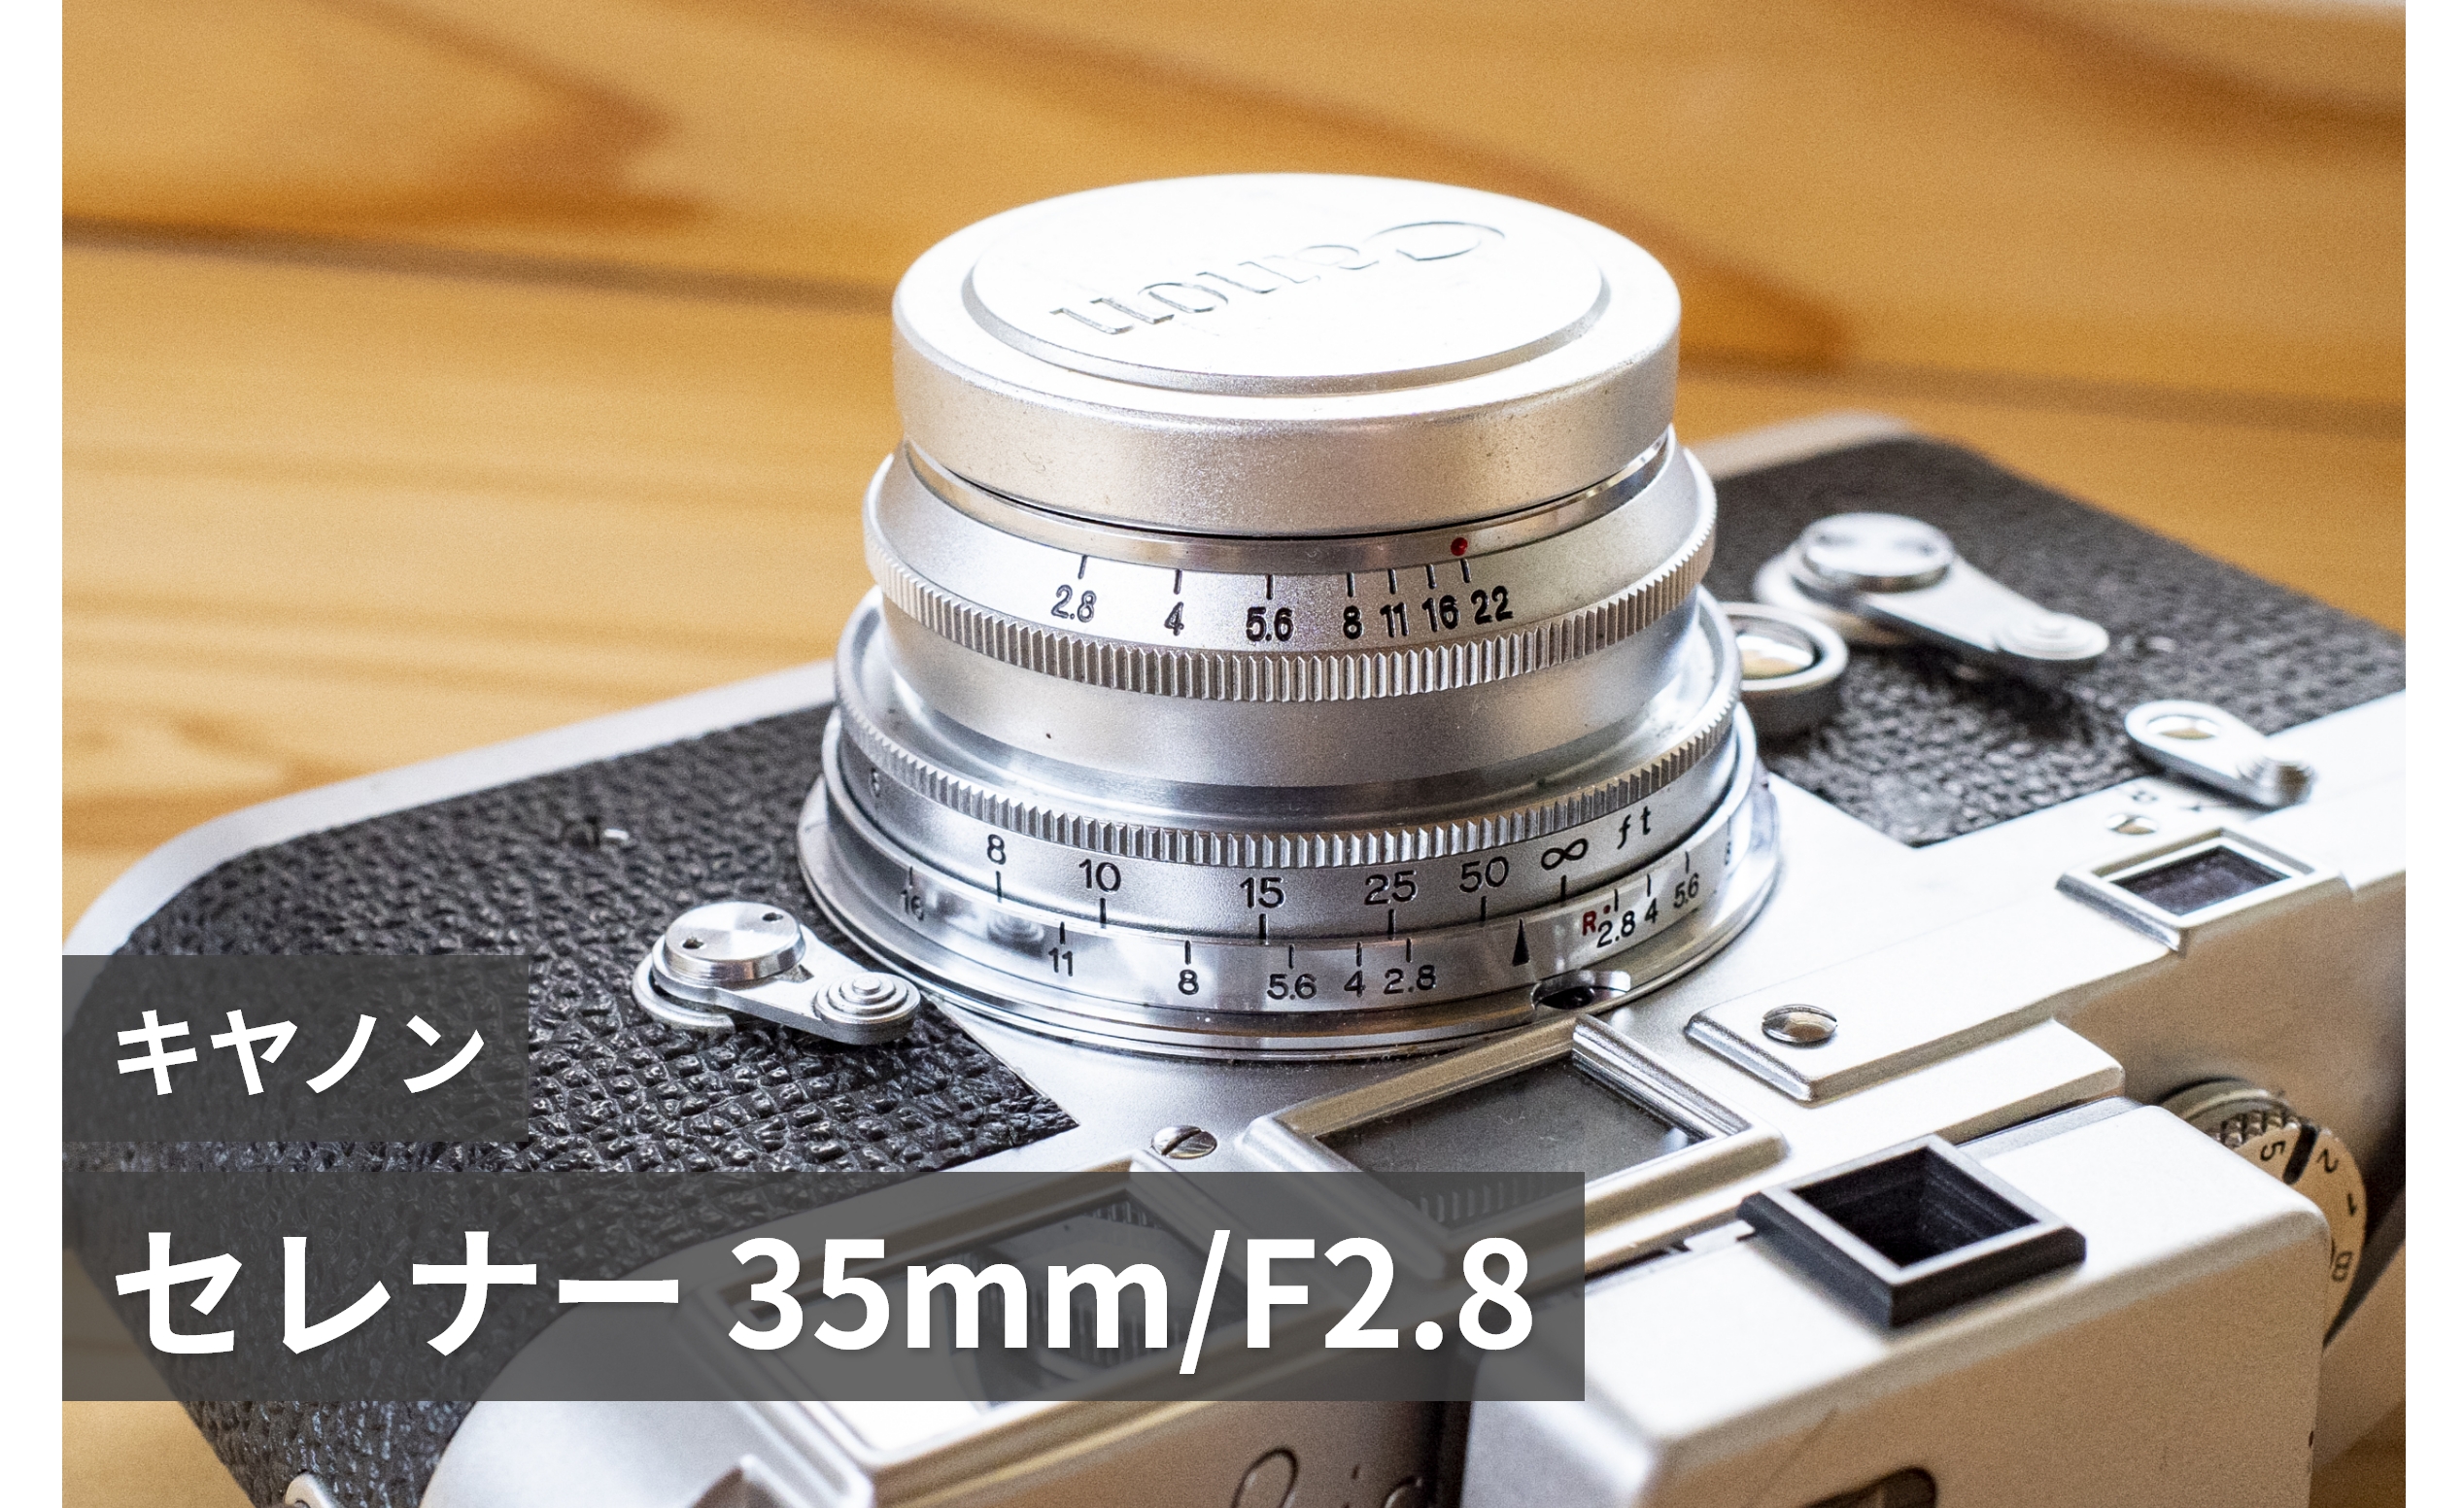 キヤノン セレナー 35mm F2.8L 】ヨーロッパ旅行用に広角レンズが